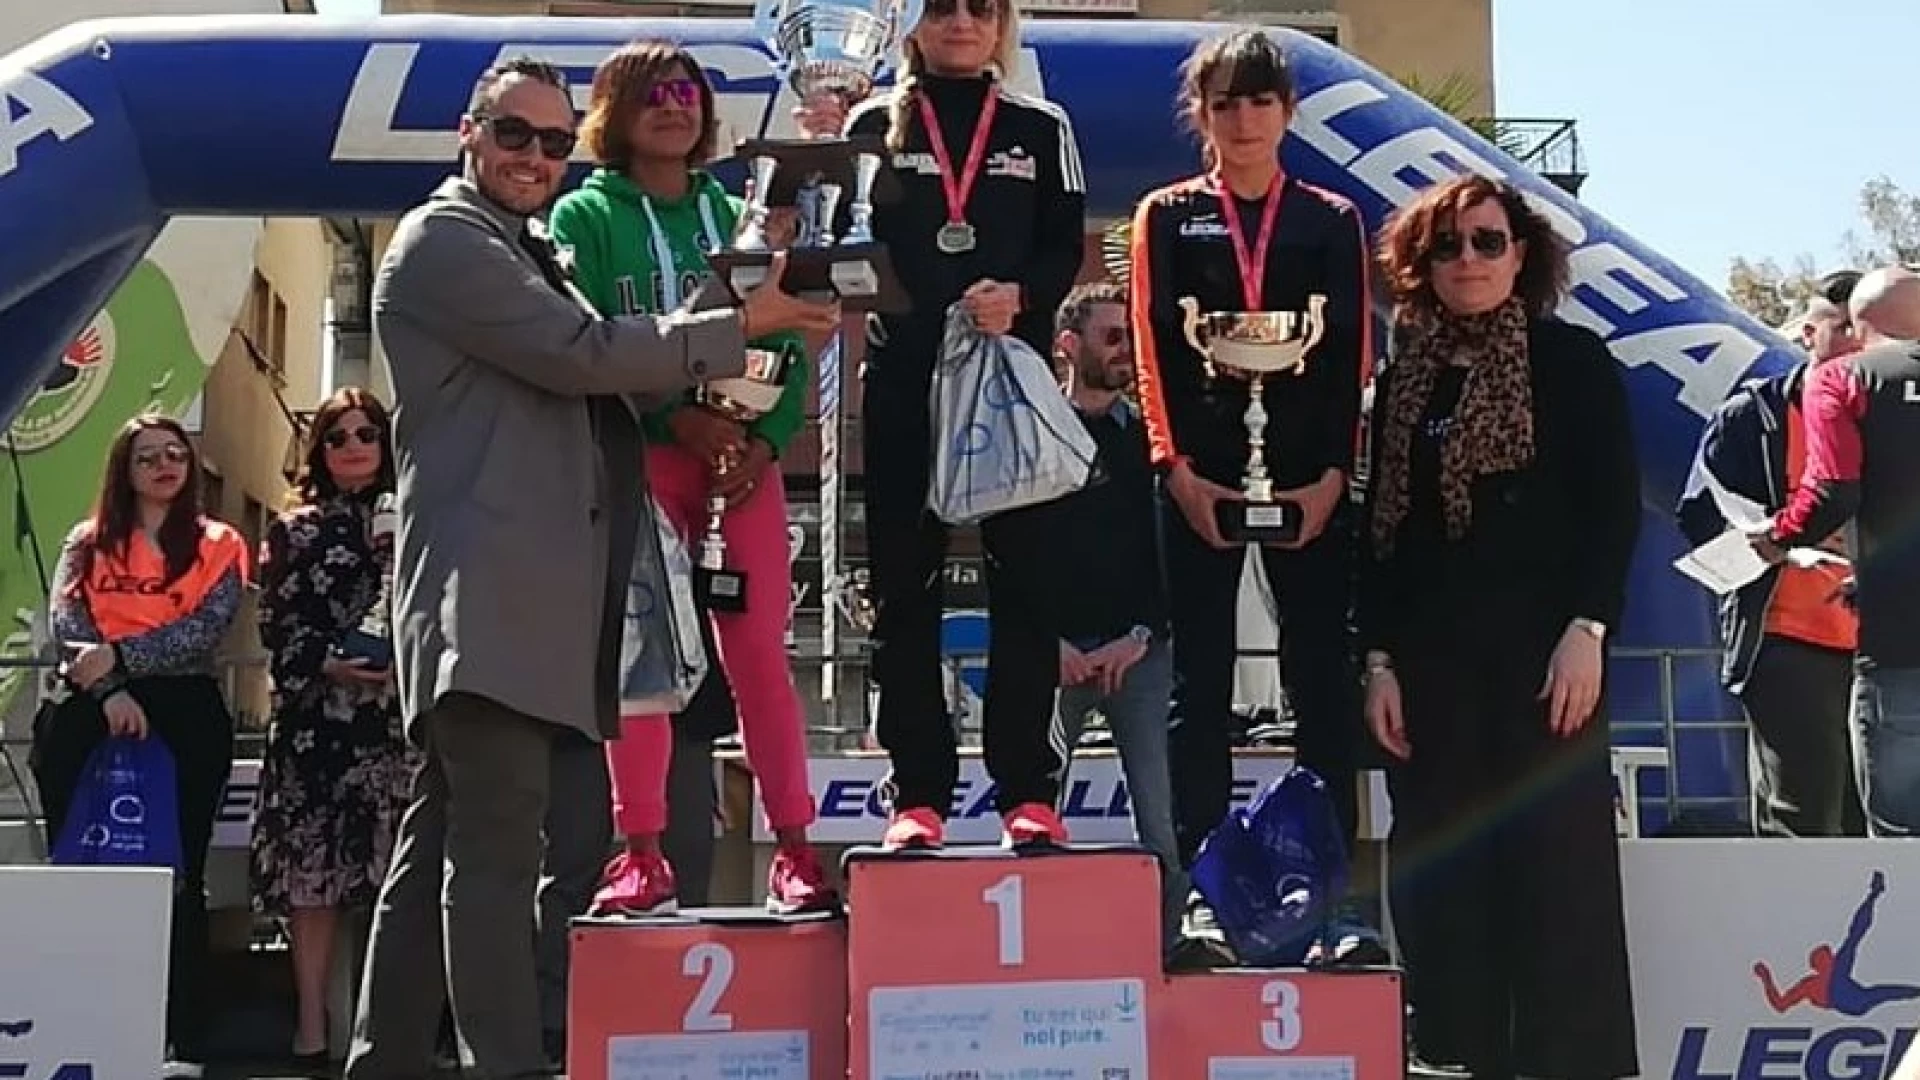 Atletica leggera: Agropoli incorona Iolanda Ferritti, nuova primatista regionale della mezza Maratona.